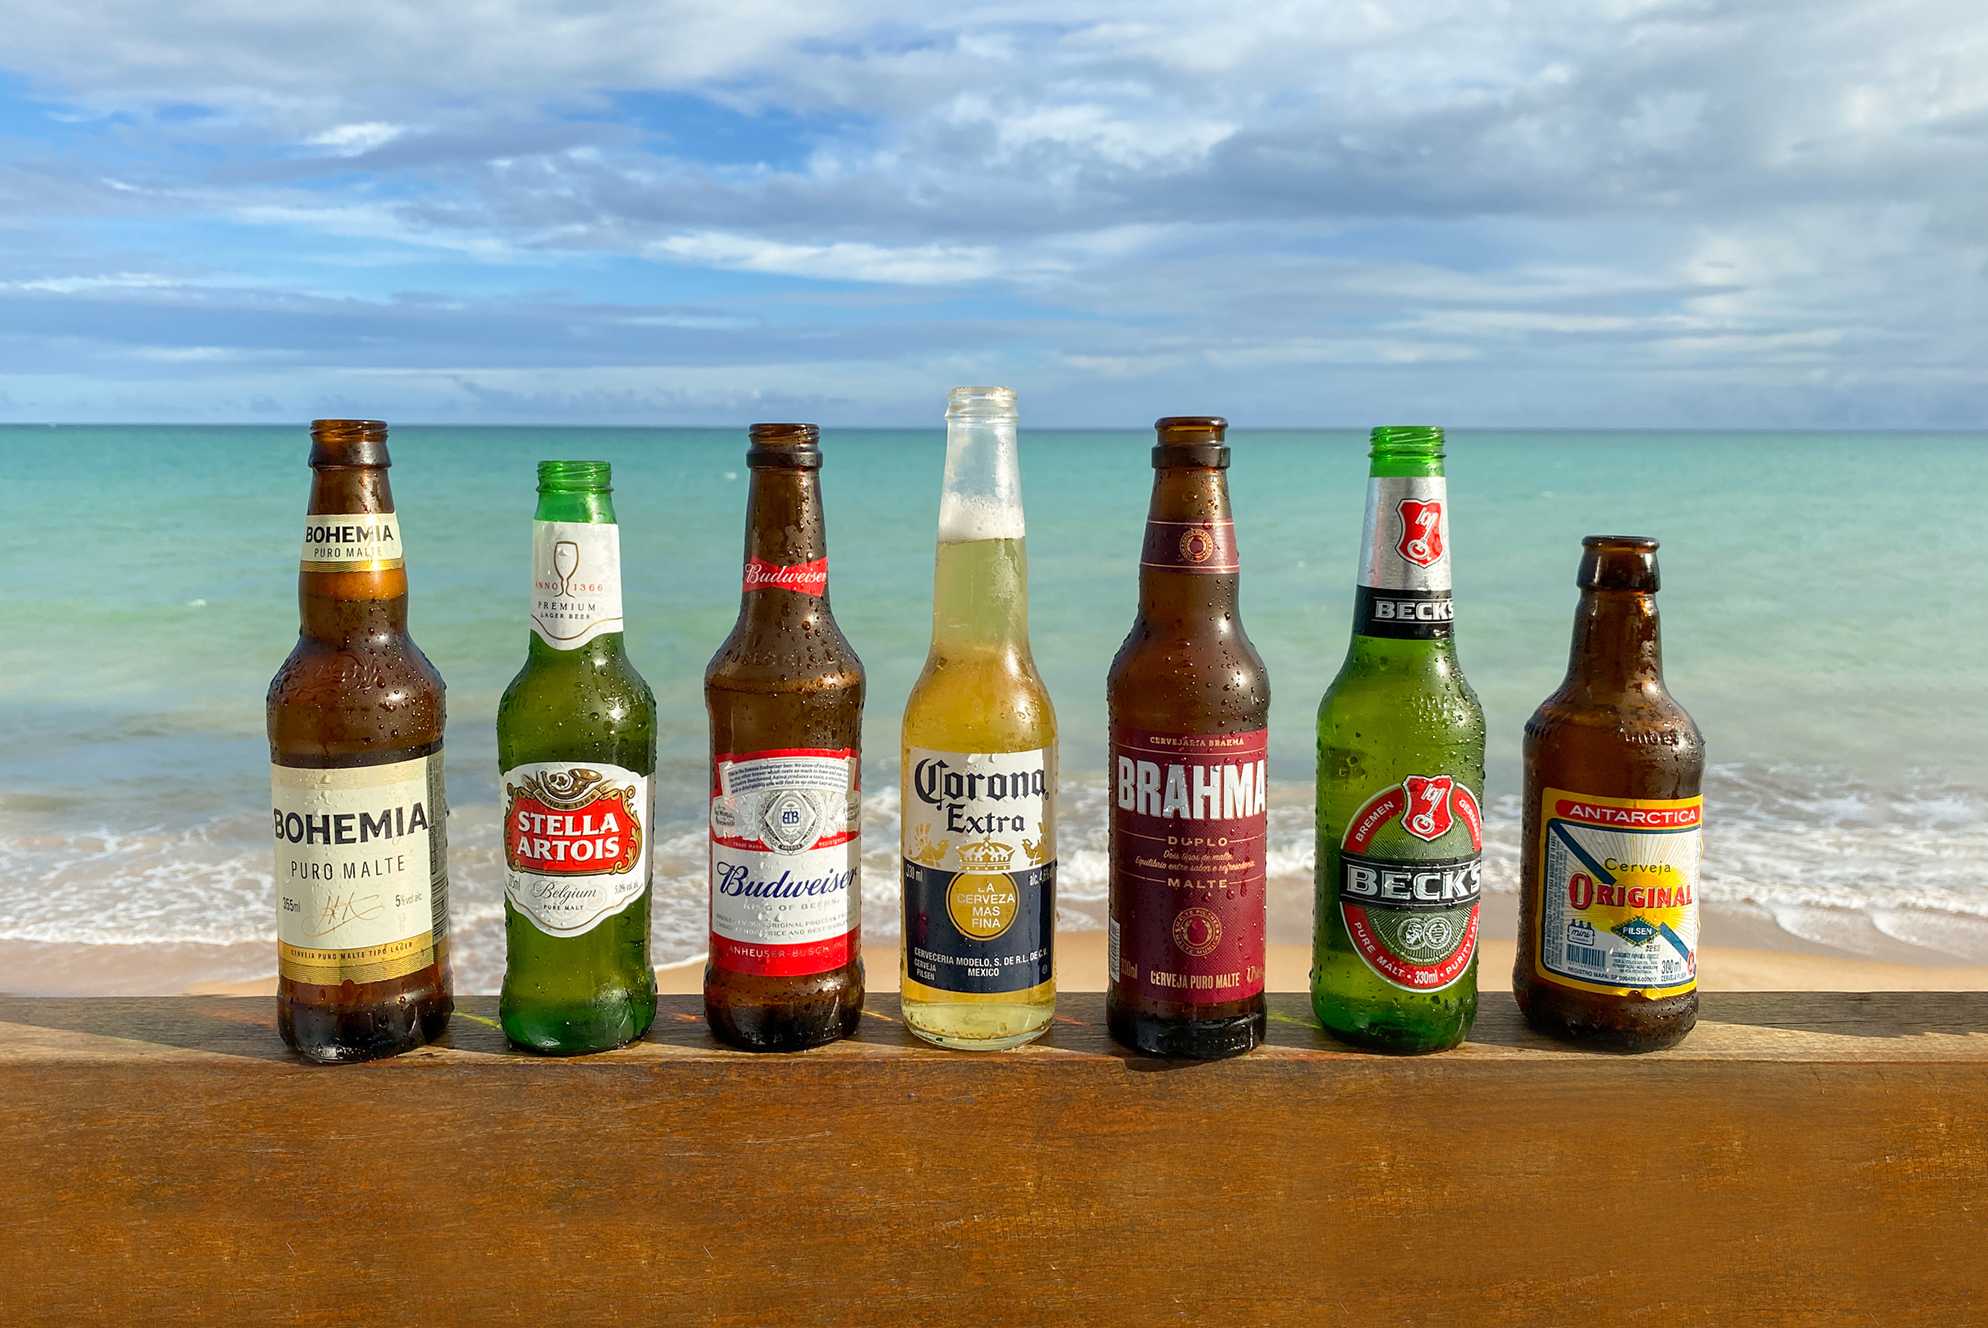 Frente ao horizonte azul do mar, garrafas de cervejas conhecidas — Bohemia, Stella Artois, Corona, Brahma, Beck's e Antárctica Original — estão molhadas por gotas de condensação.